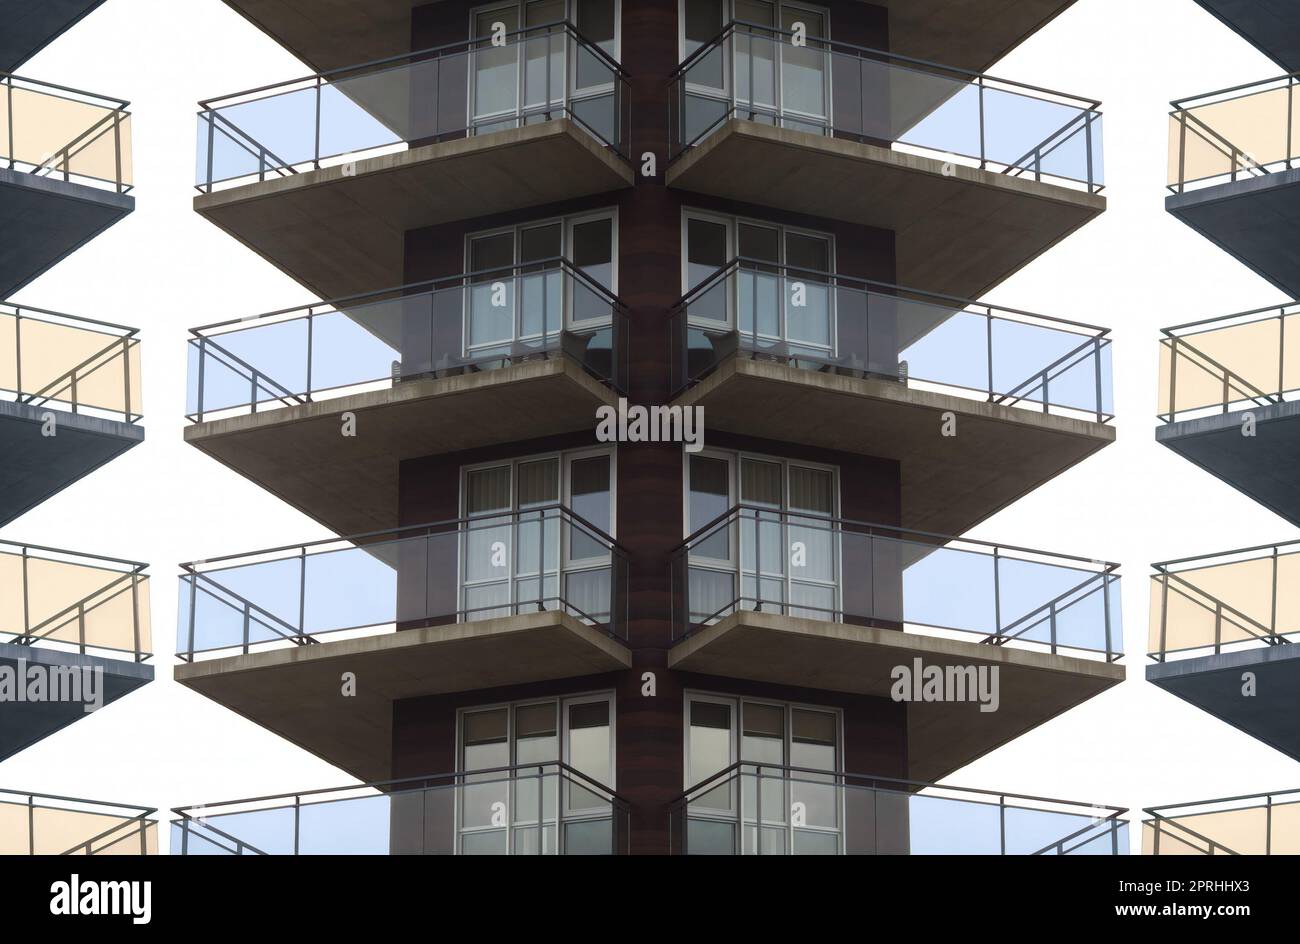 Apartmentgebäude mit Beton- und Glasbalkon, symmetrischem Spiegeleffekt, Wohnhochkratzer Stockfoto